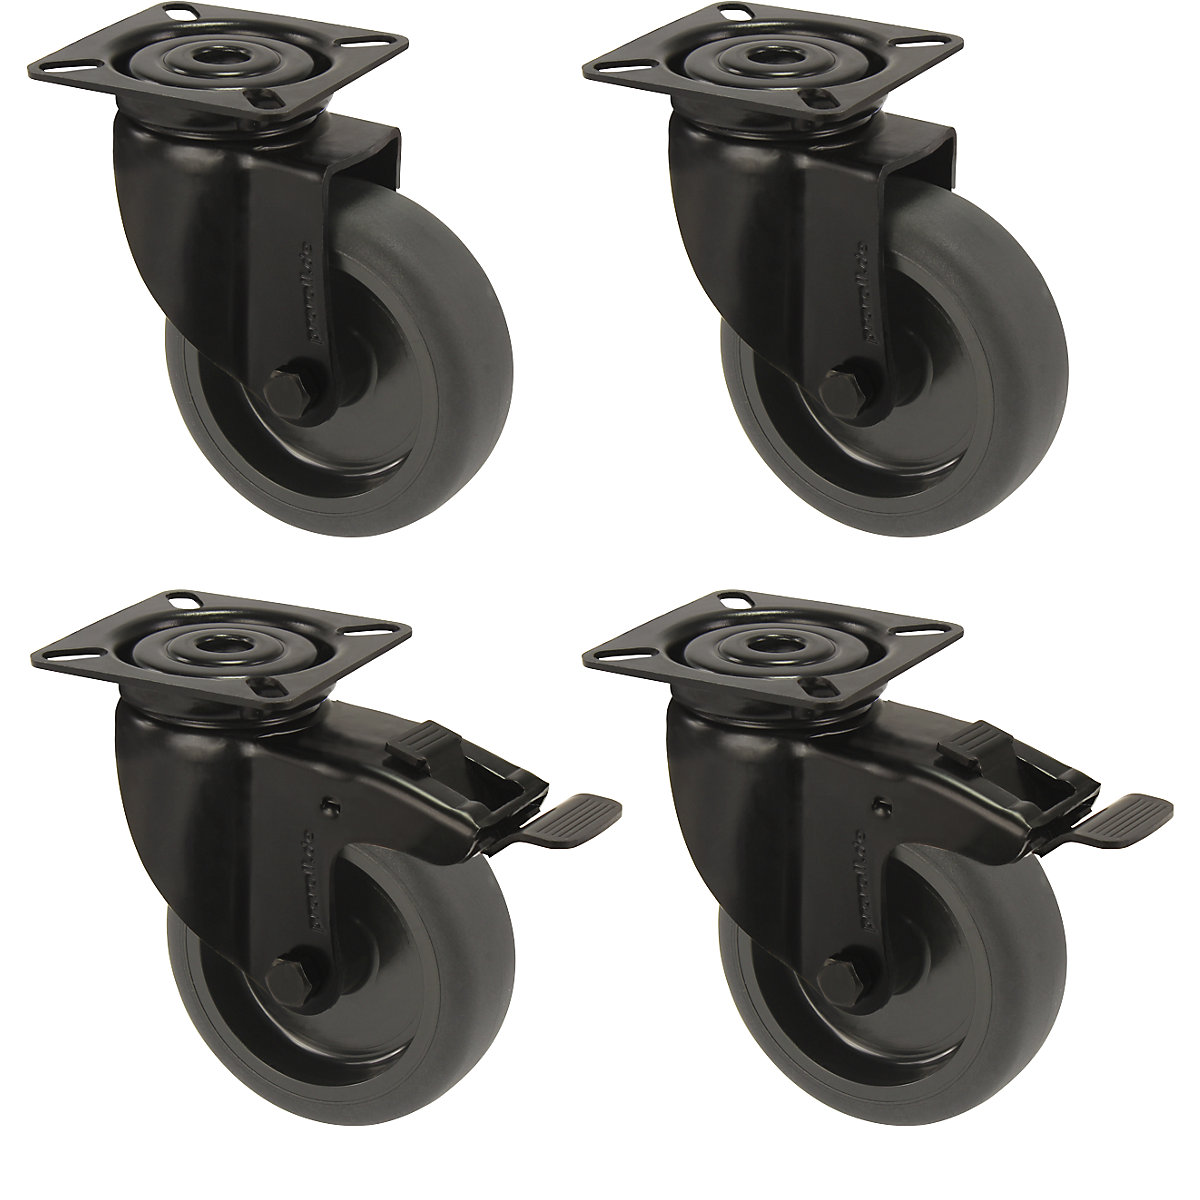 Anvelopă din cauciuc termoplastic negru, cu placă de montaj, ofertă la set – Proroll, 2 roți pivotante cu frână dublă și 2 roți pivotante, Ø roții x lățime 75 x 23 mm